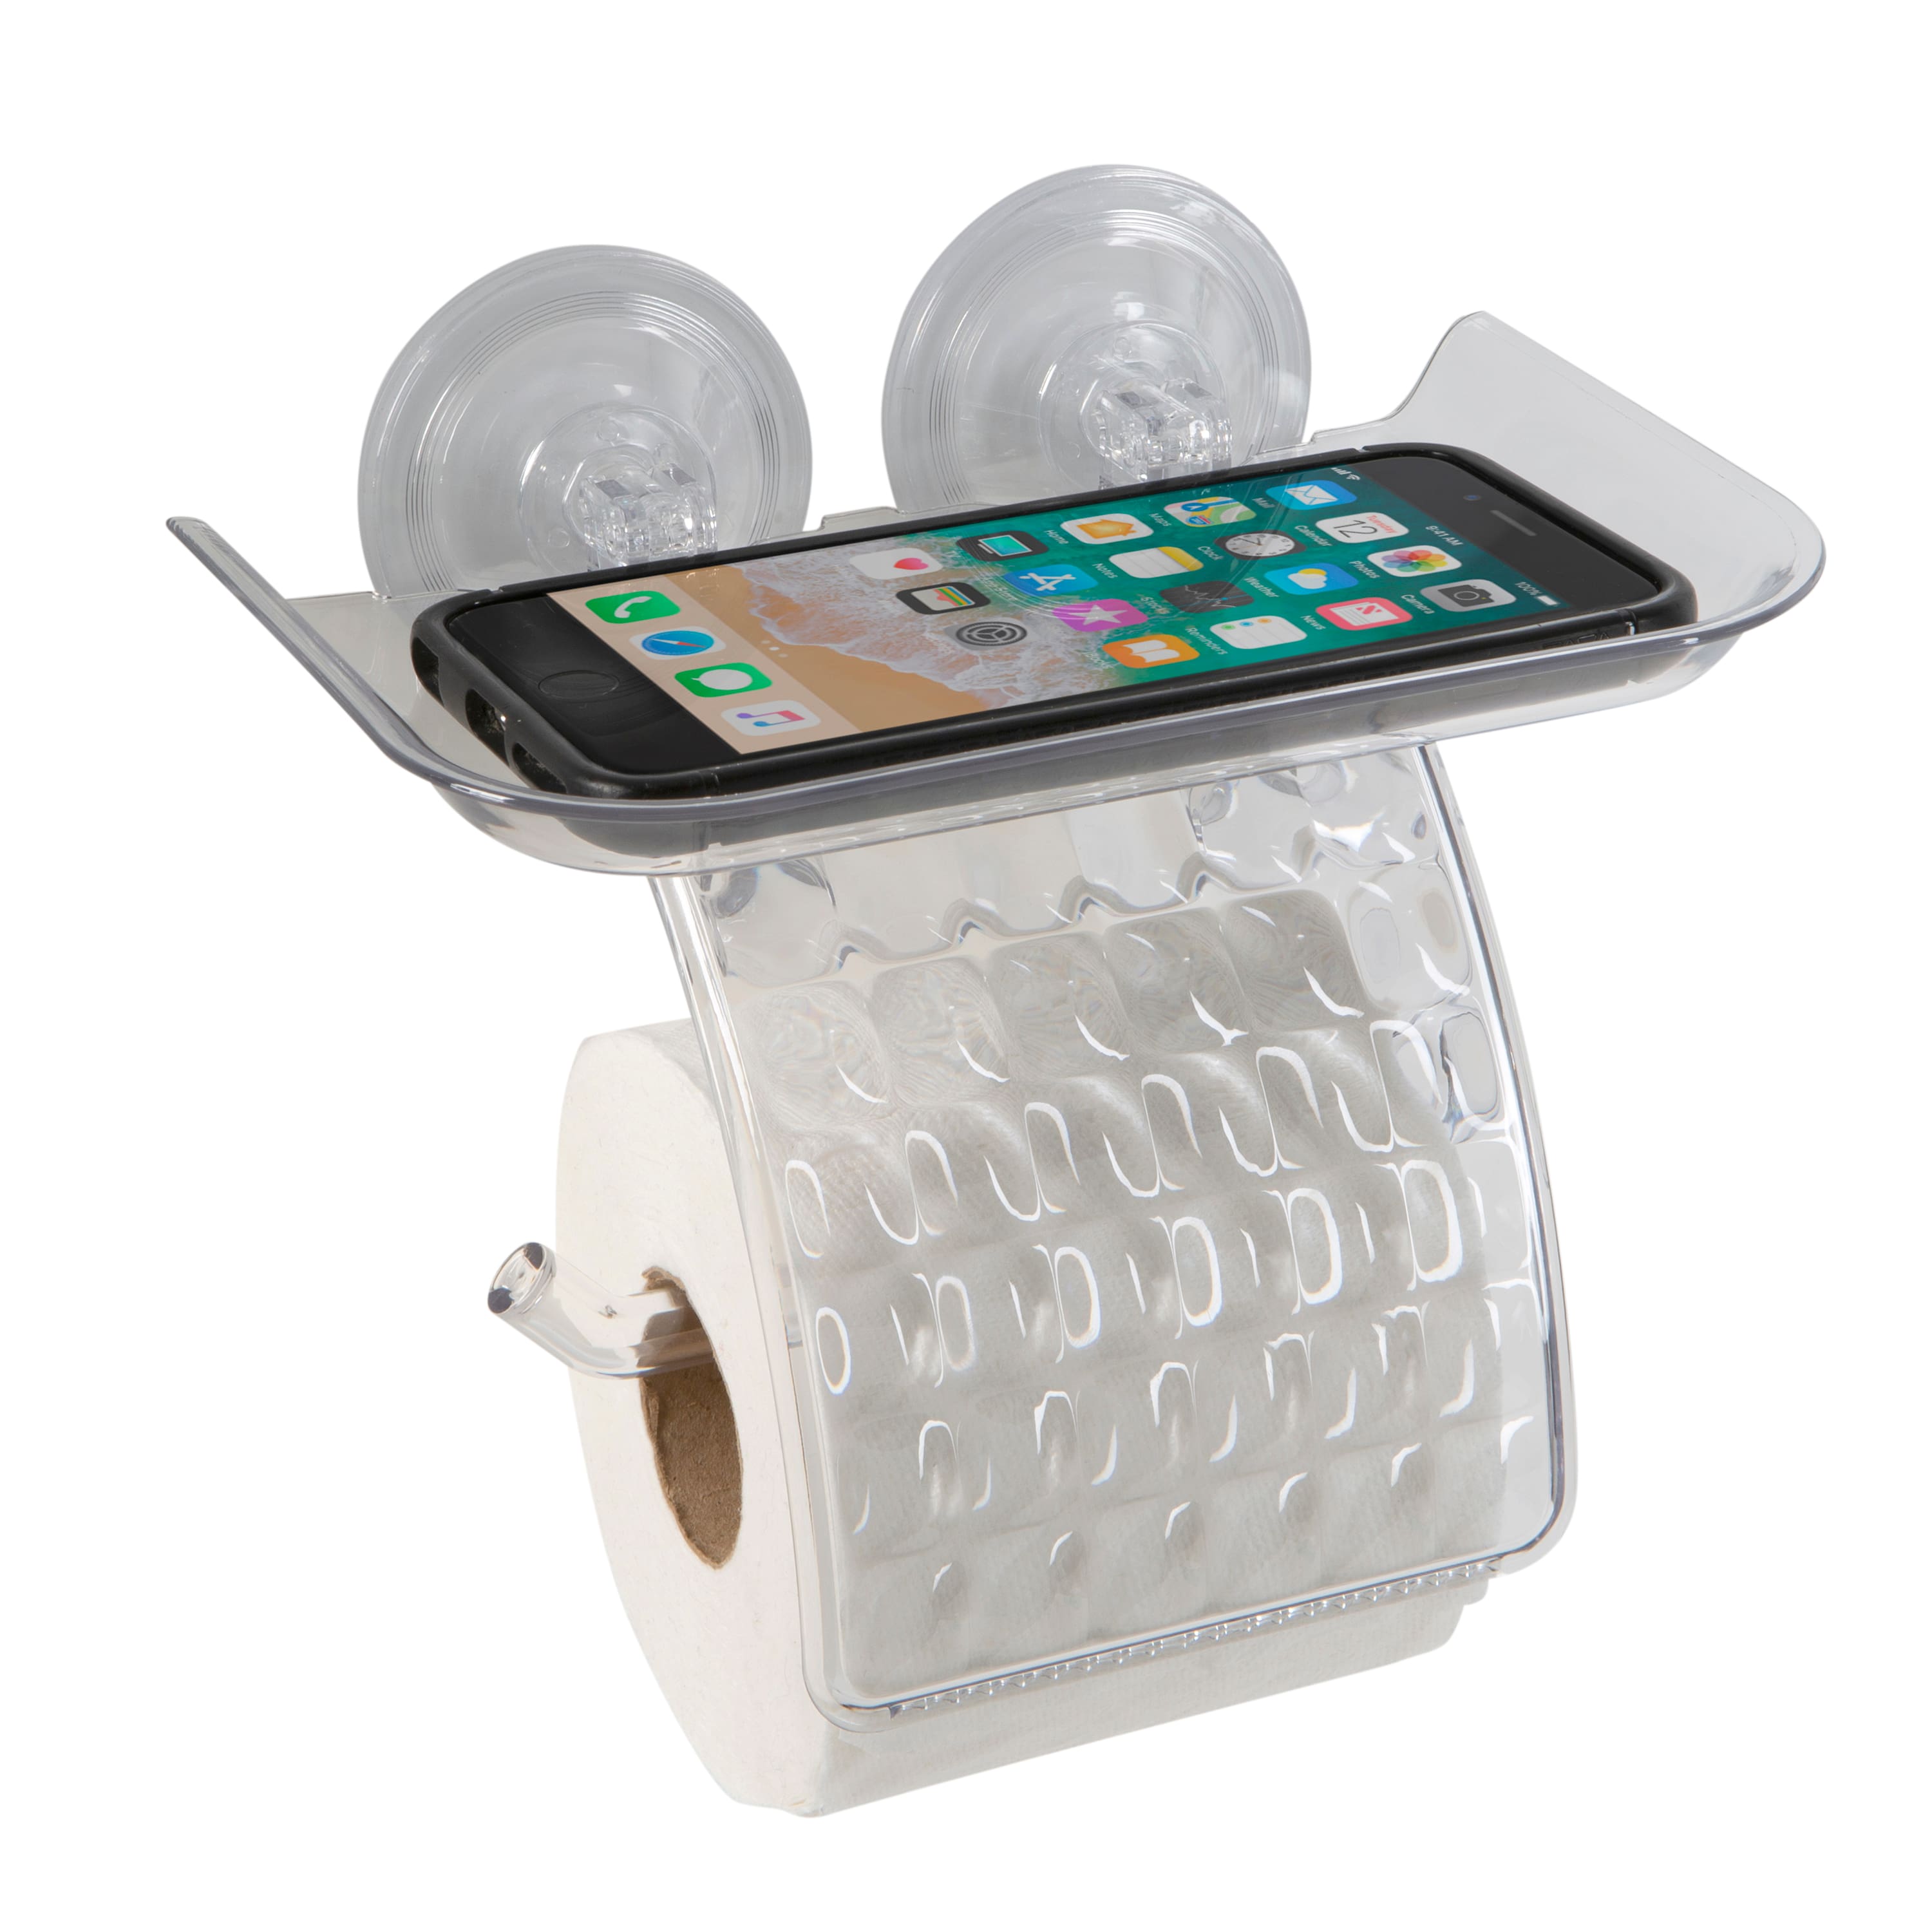 Bath Bliss Toilet Paper Dispenser with Cell Phone Holder Shelf